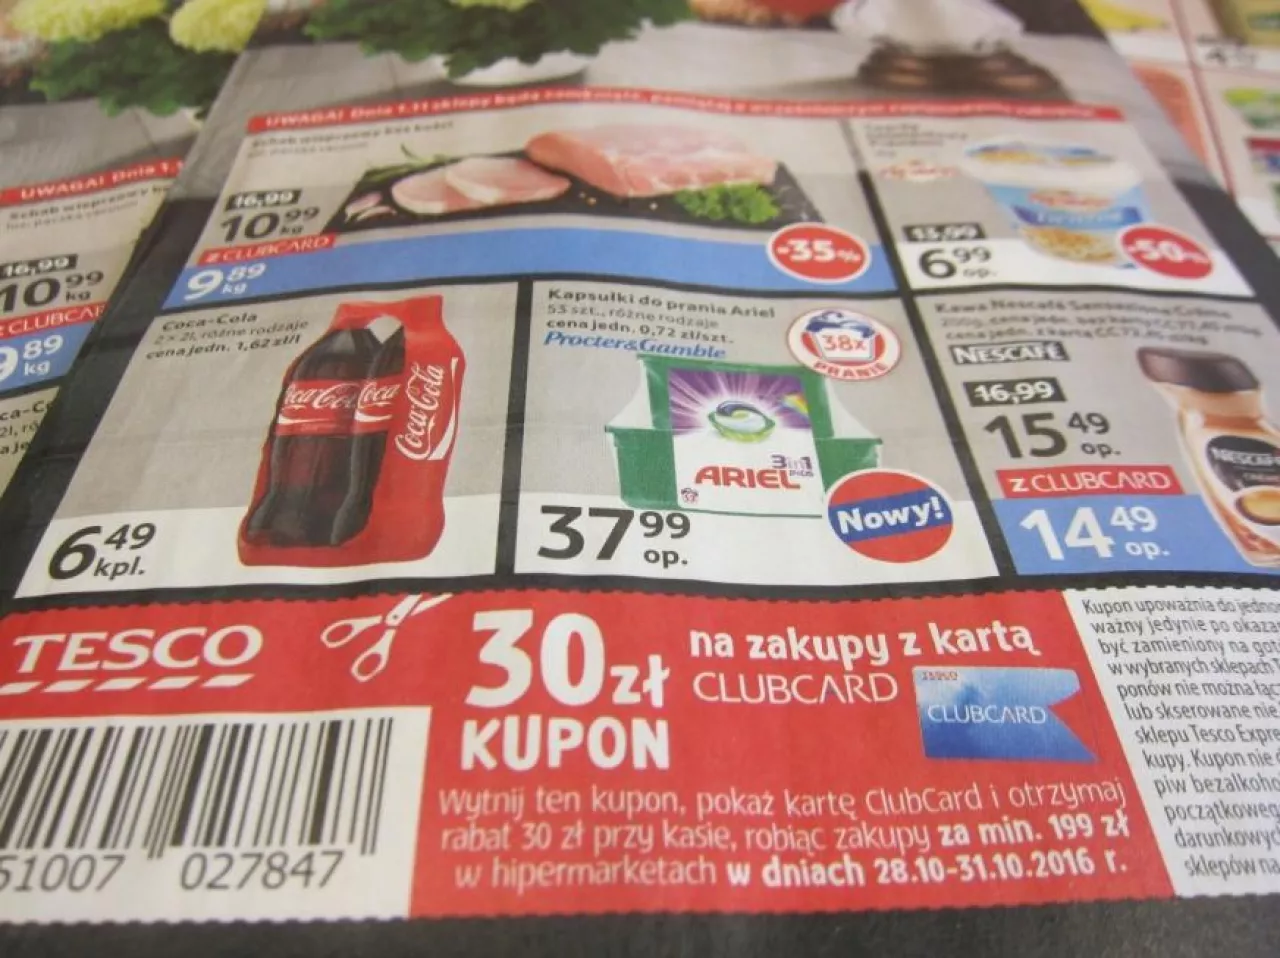 Klienci Tesco kupony rabatowe znajdą w gazetce promocyjnej sieci (fot. materiały prasowe)